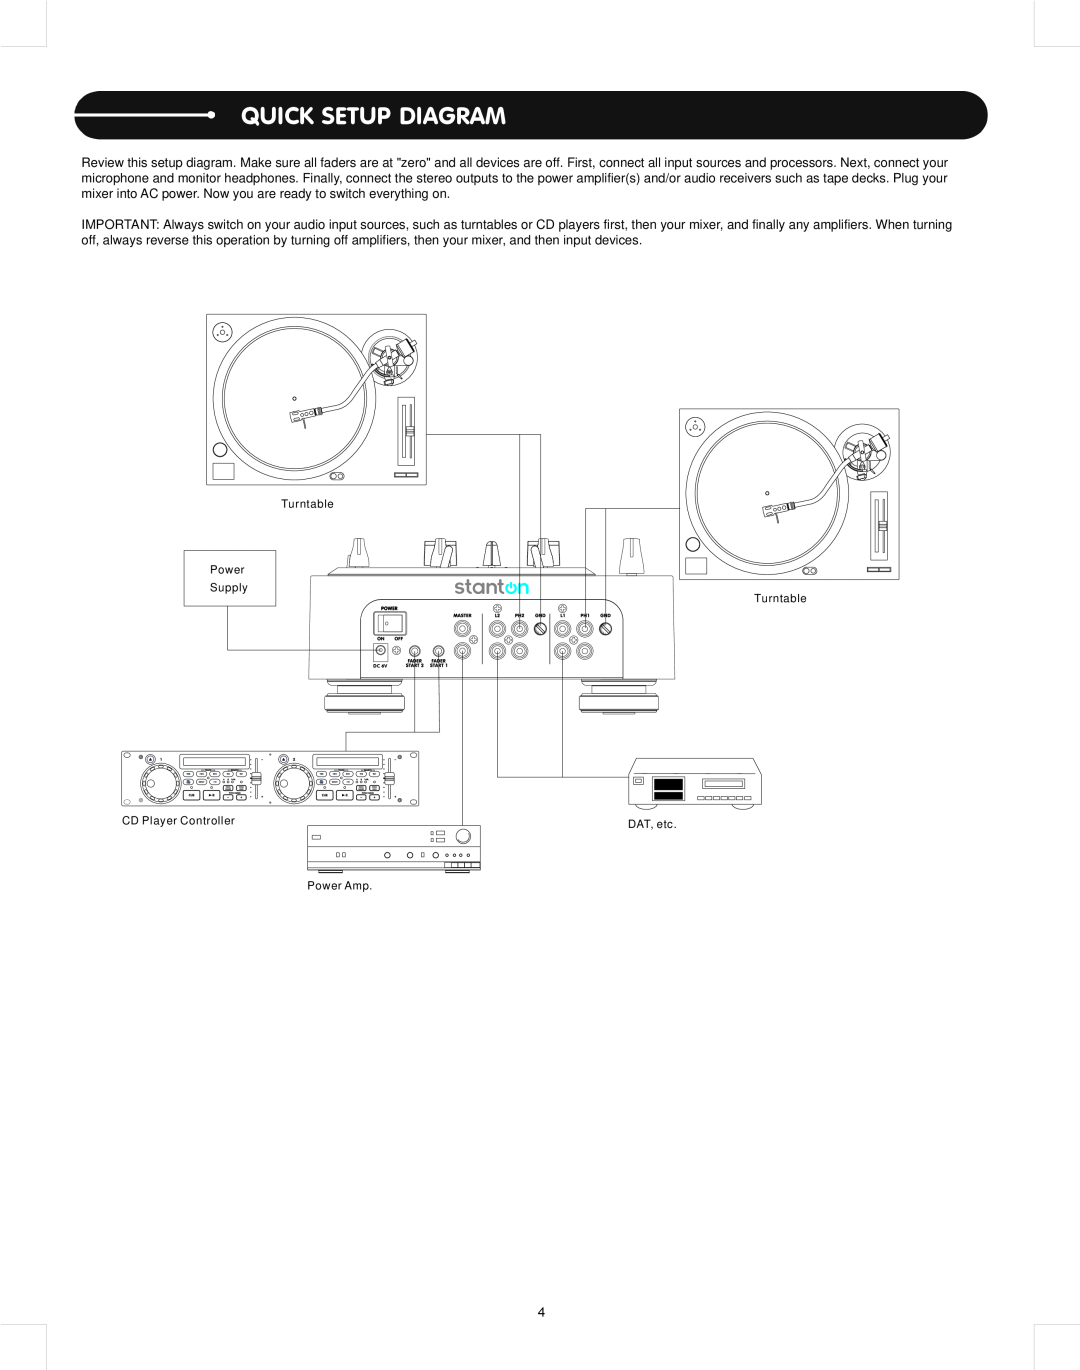 Stanton M.212 user manual Quick Setup Diagram 